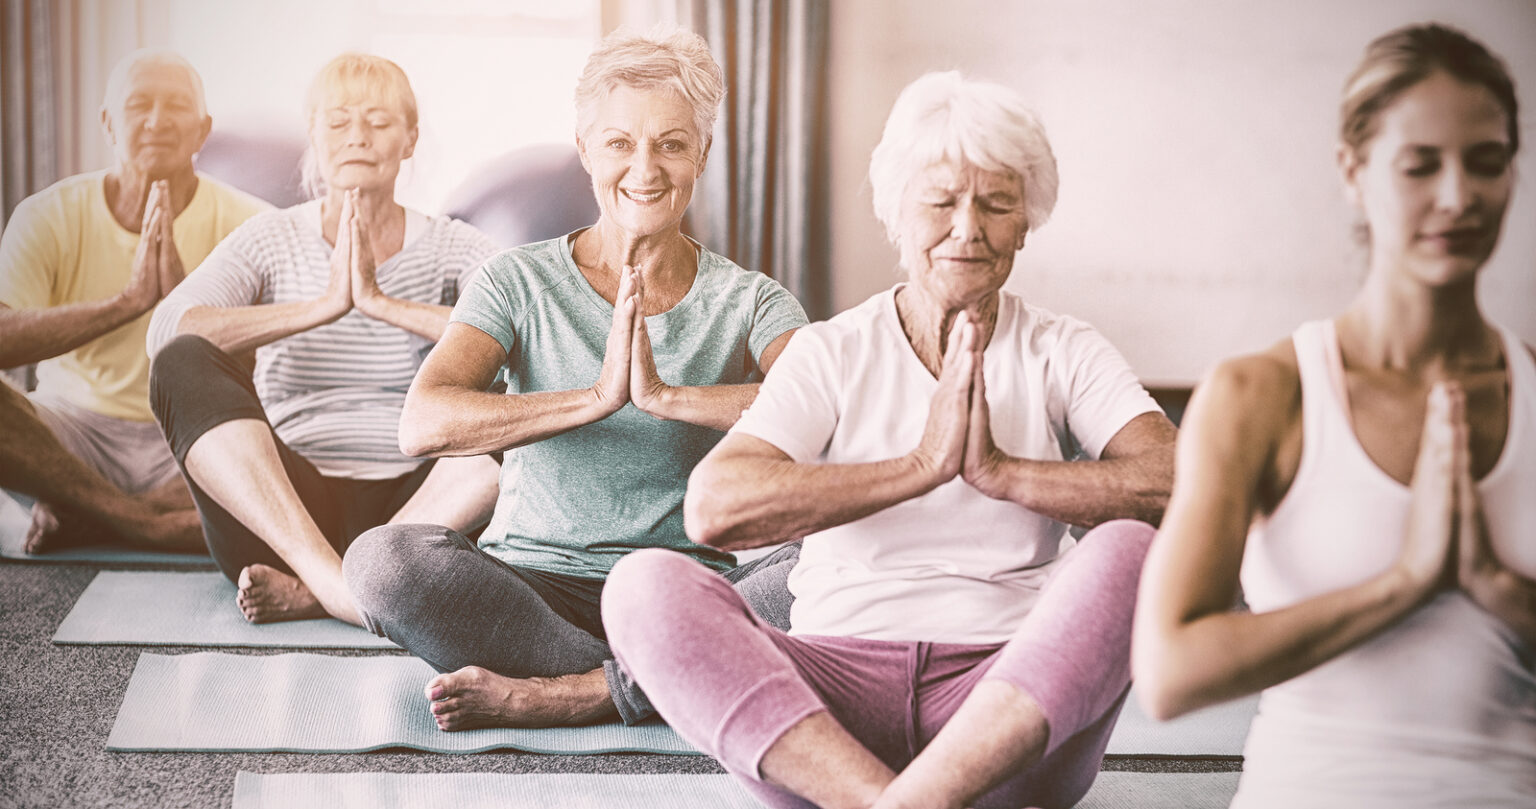 Йога для пожилых начинающих. В каком возрасте начинать йогу?